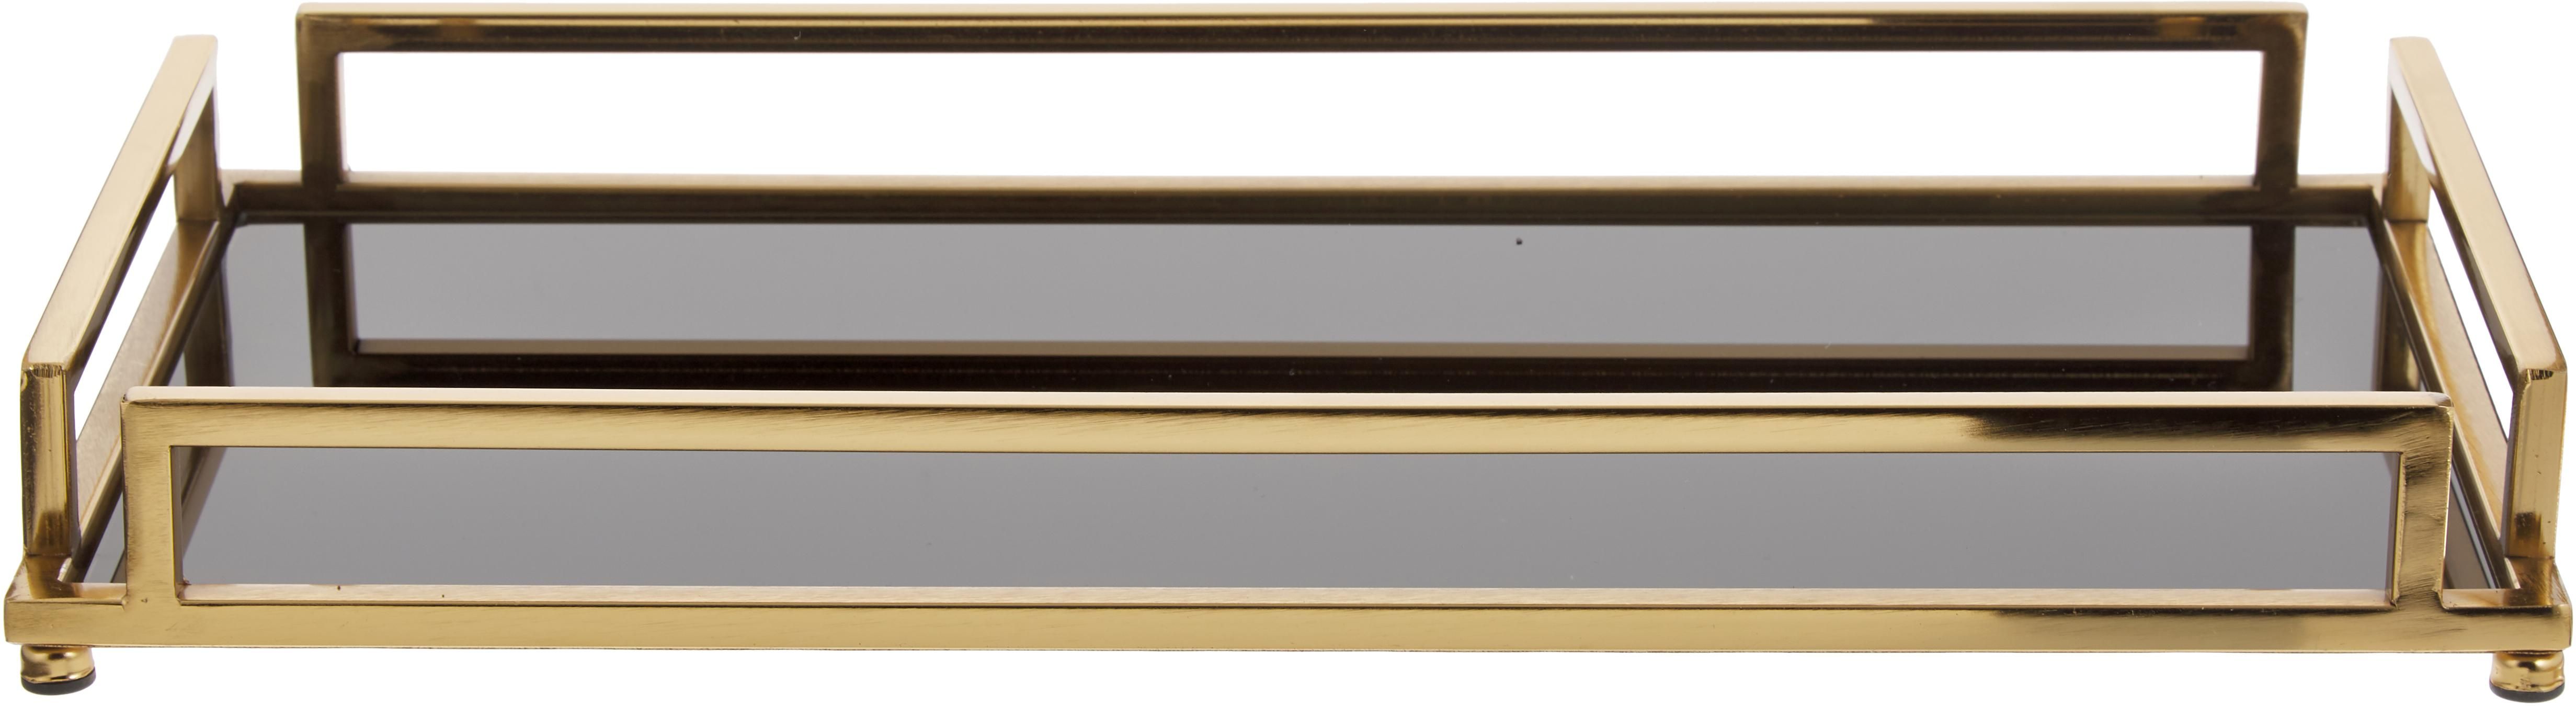 Deko-Tablett Traika in Gold mit schwarzer Ablagefläche | WestwingNow | WestwingNow (AT & DE)